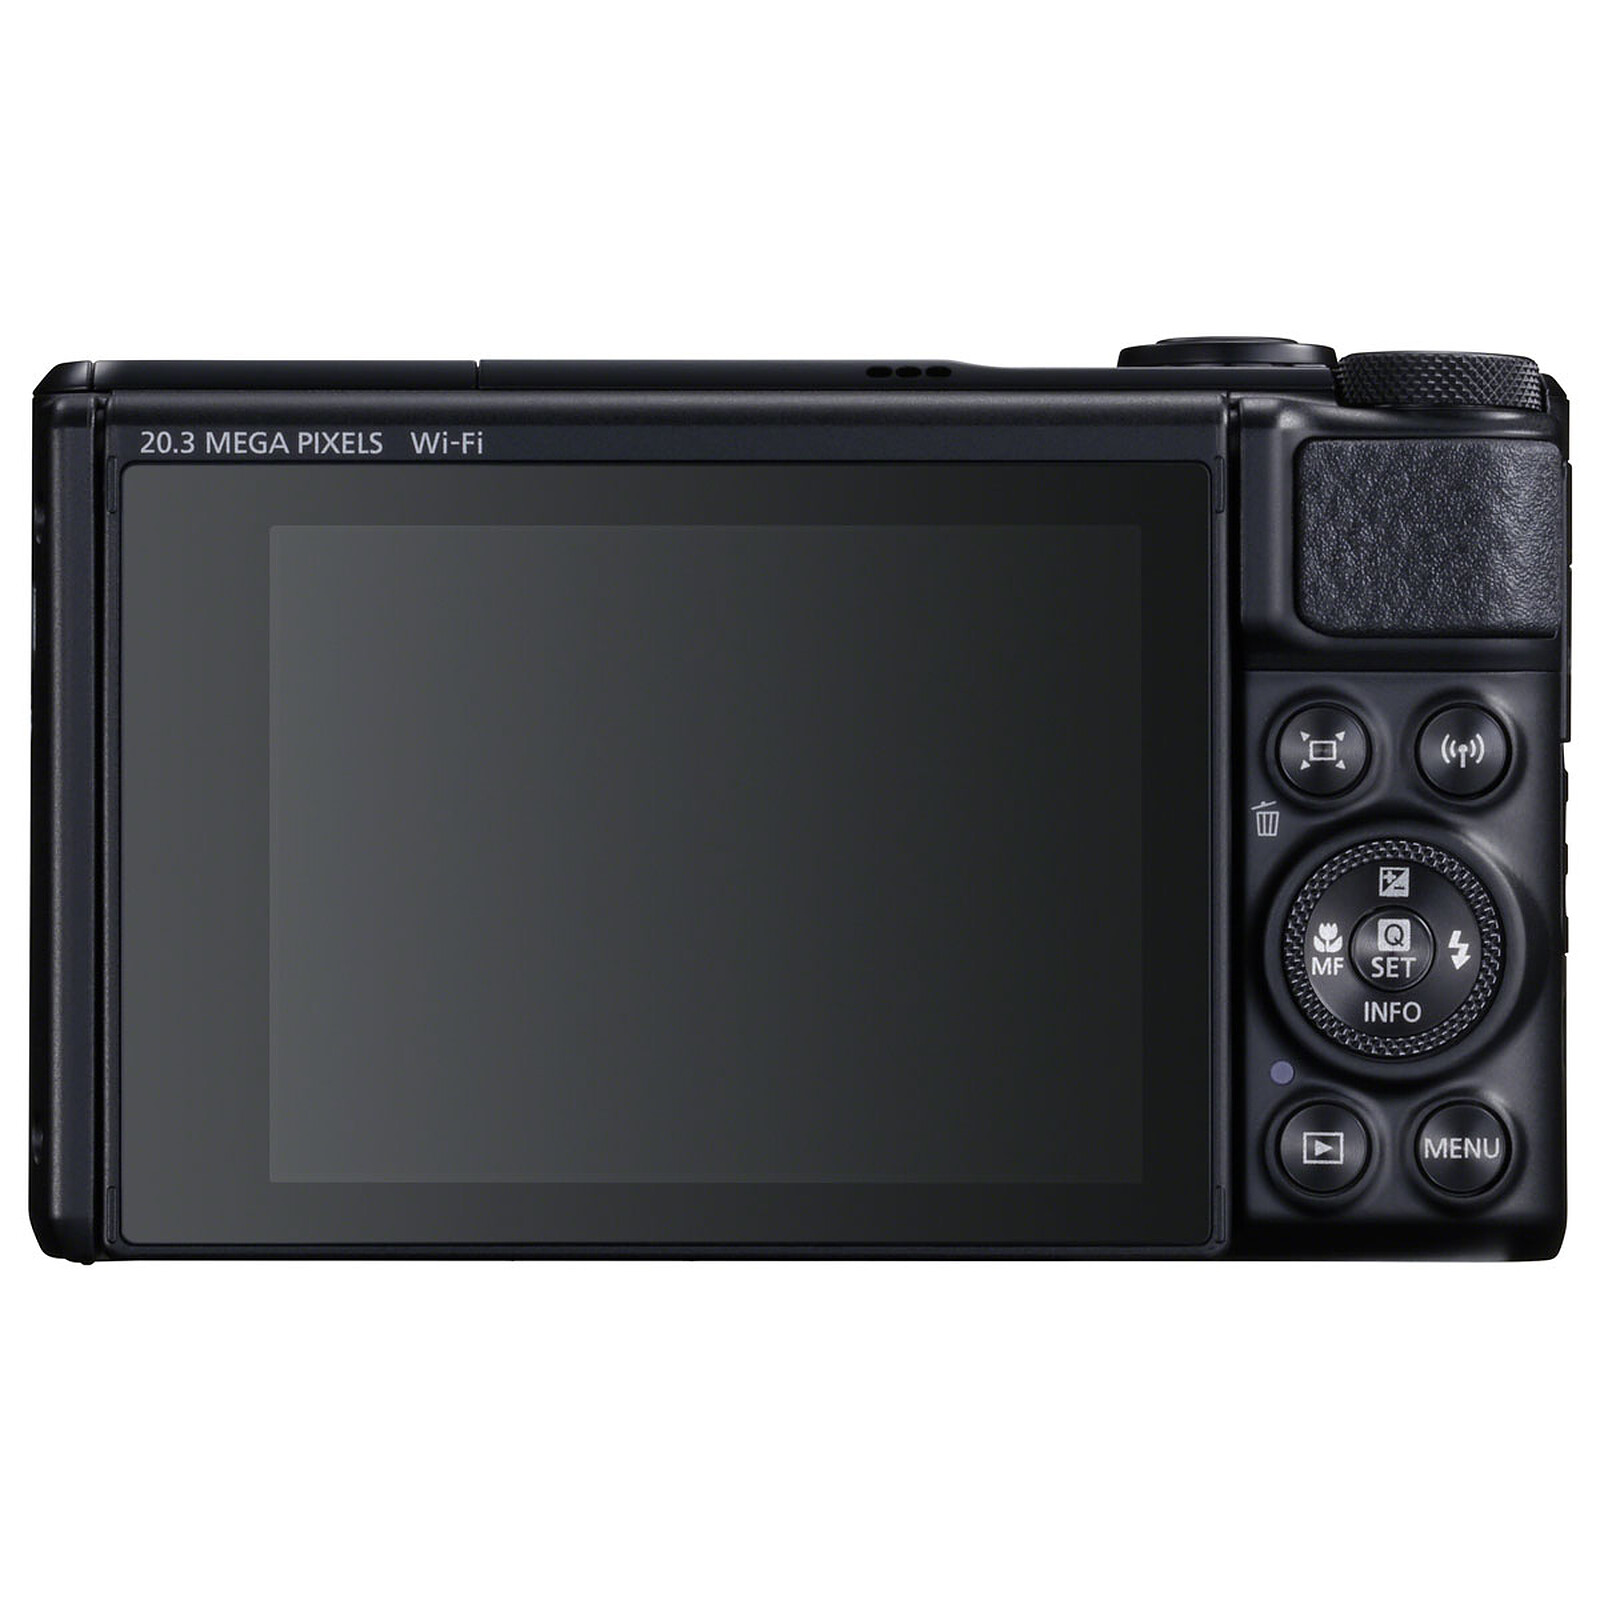 Canon PowerShot SX740 HS Black Gorillapod Case - Compact camera Canon on LDLC | Holy Moley